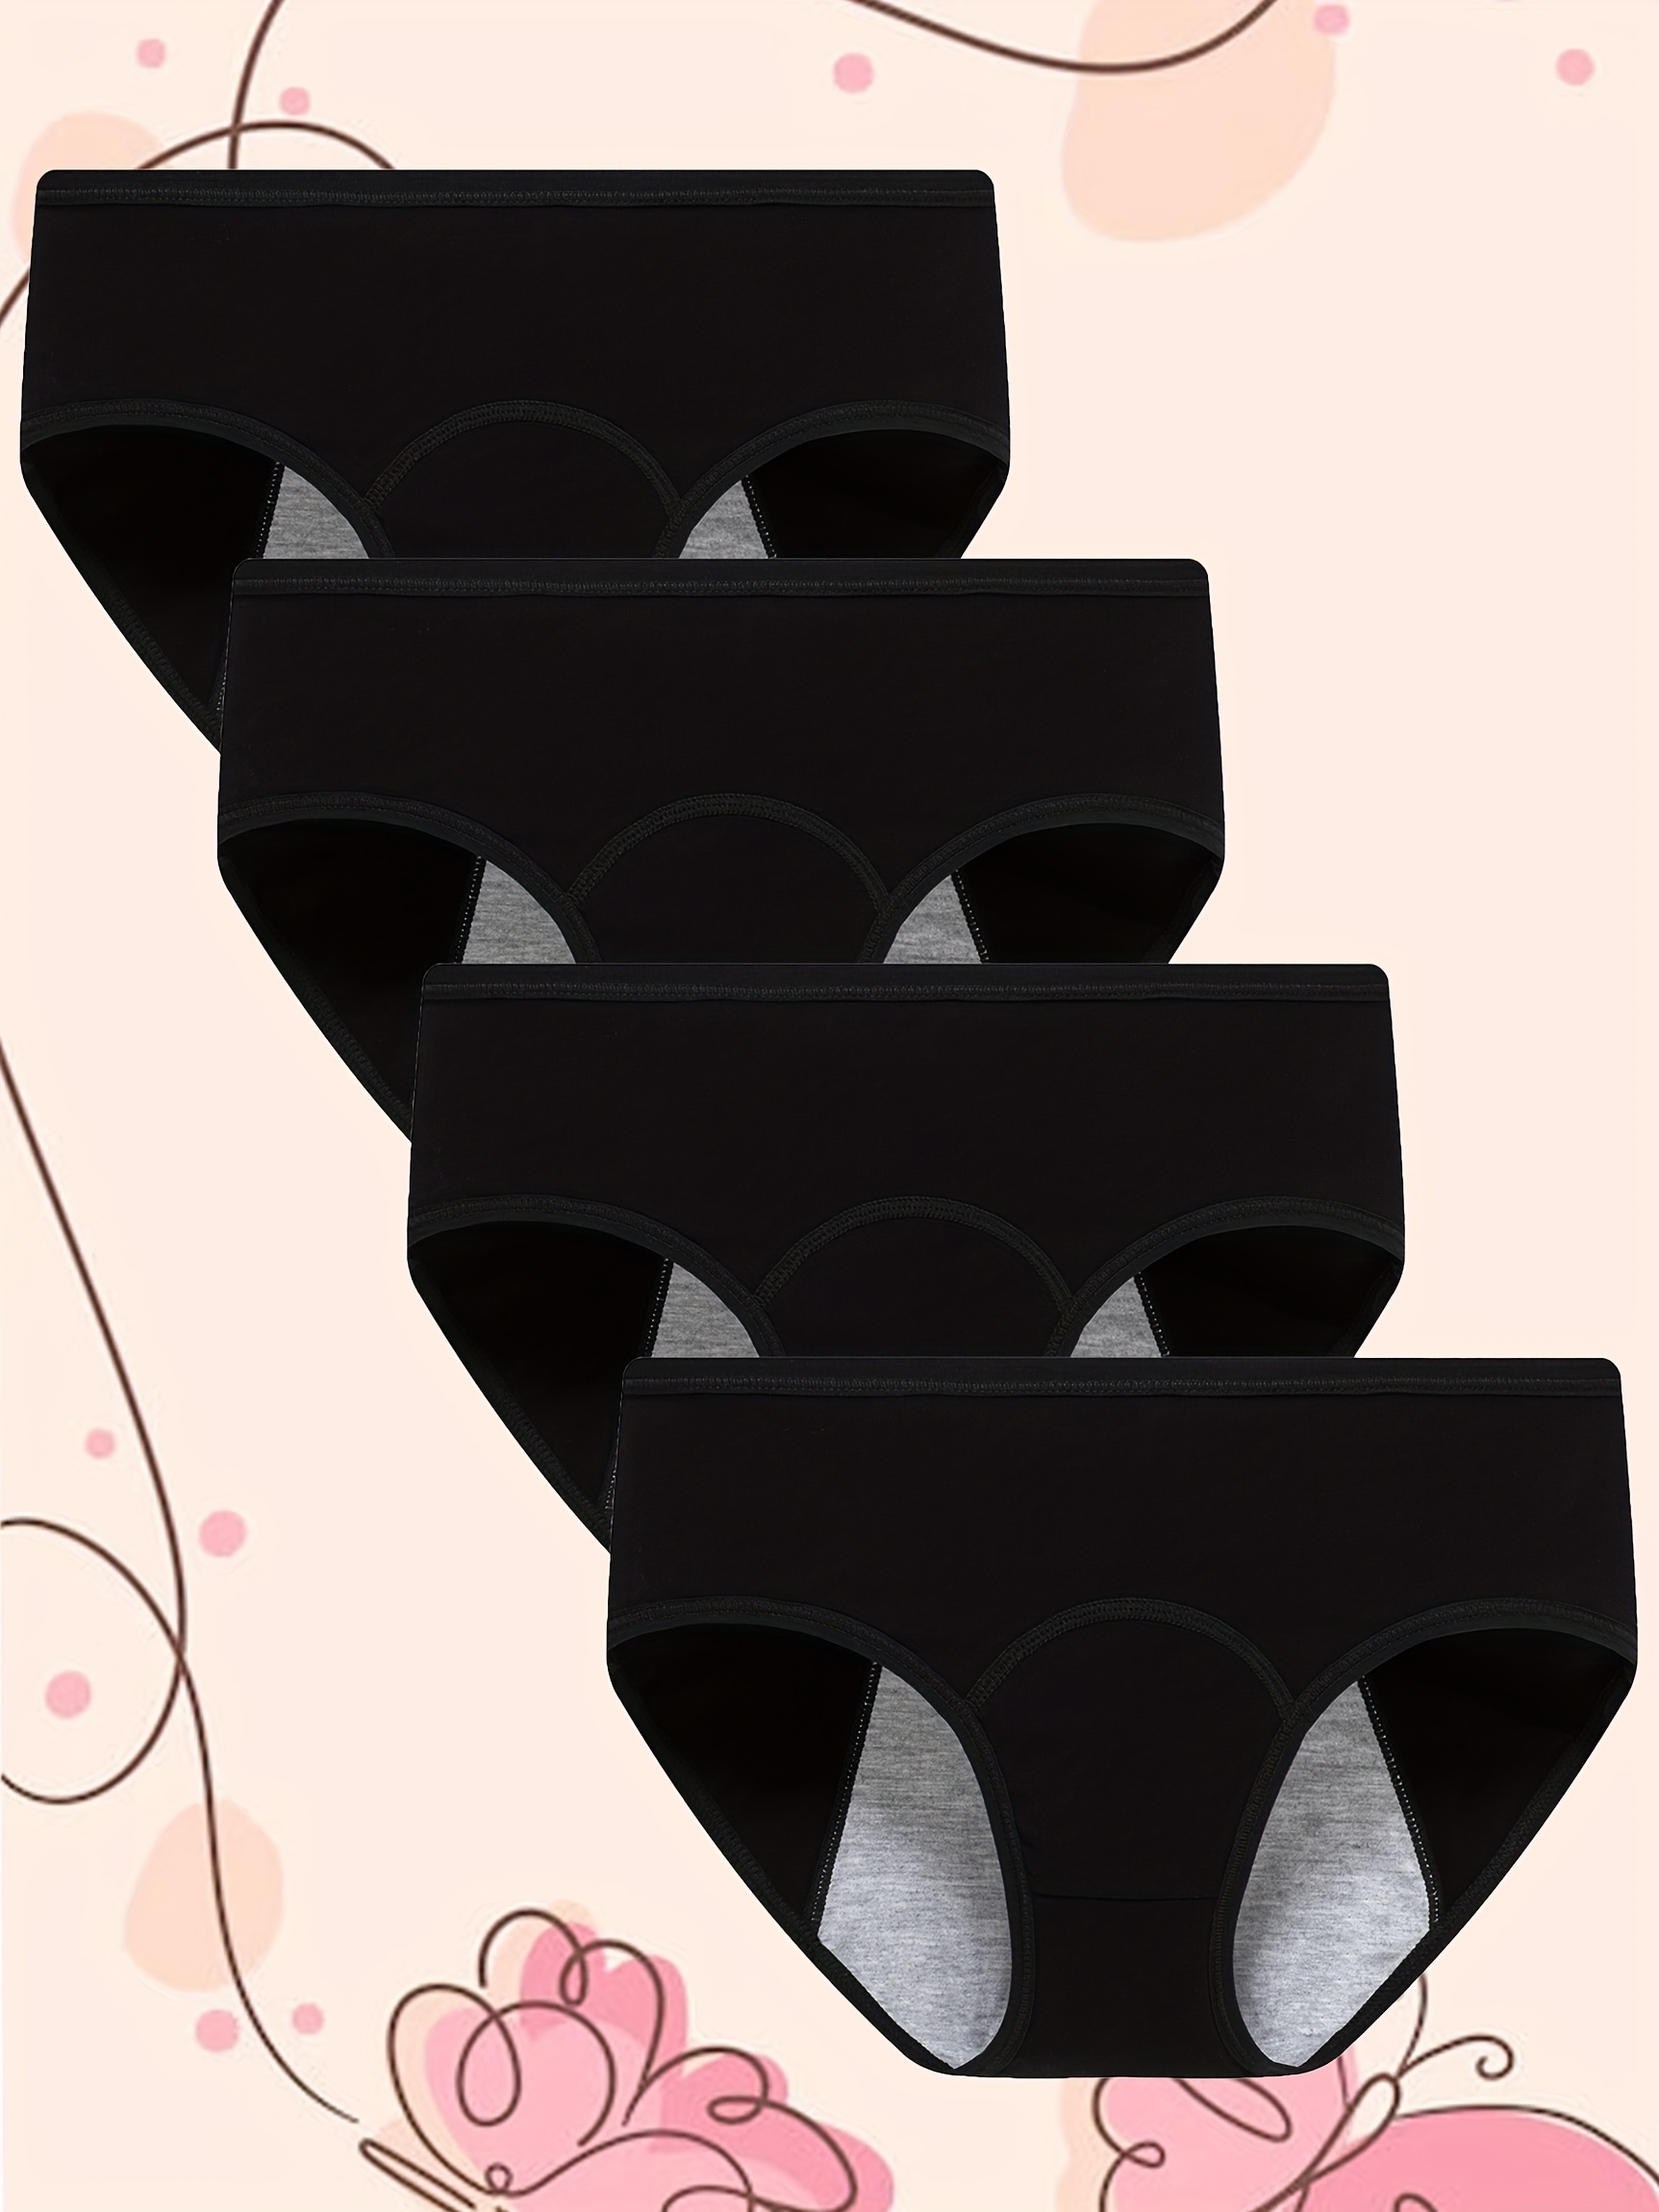 Women's Menstrual Underwear Leak proof Four layer Ultra - Temu